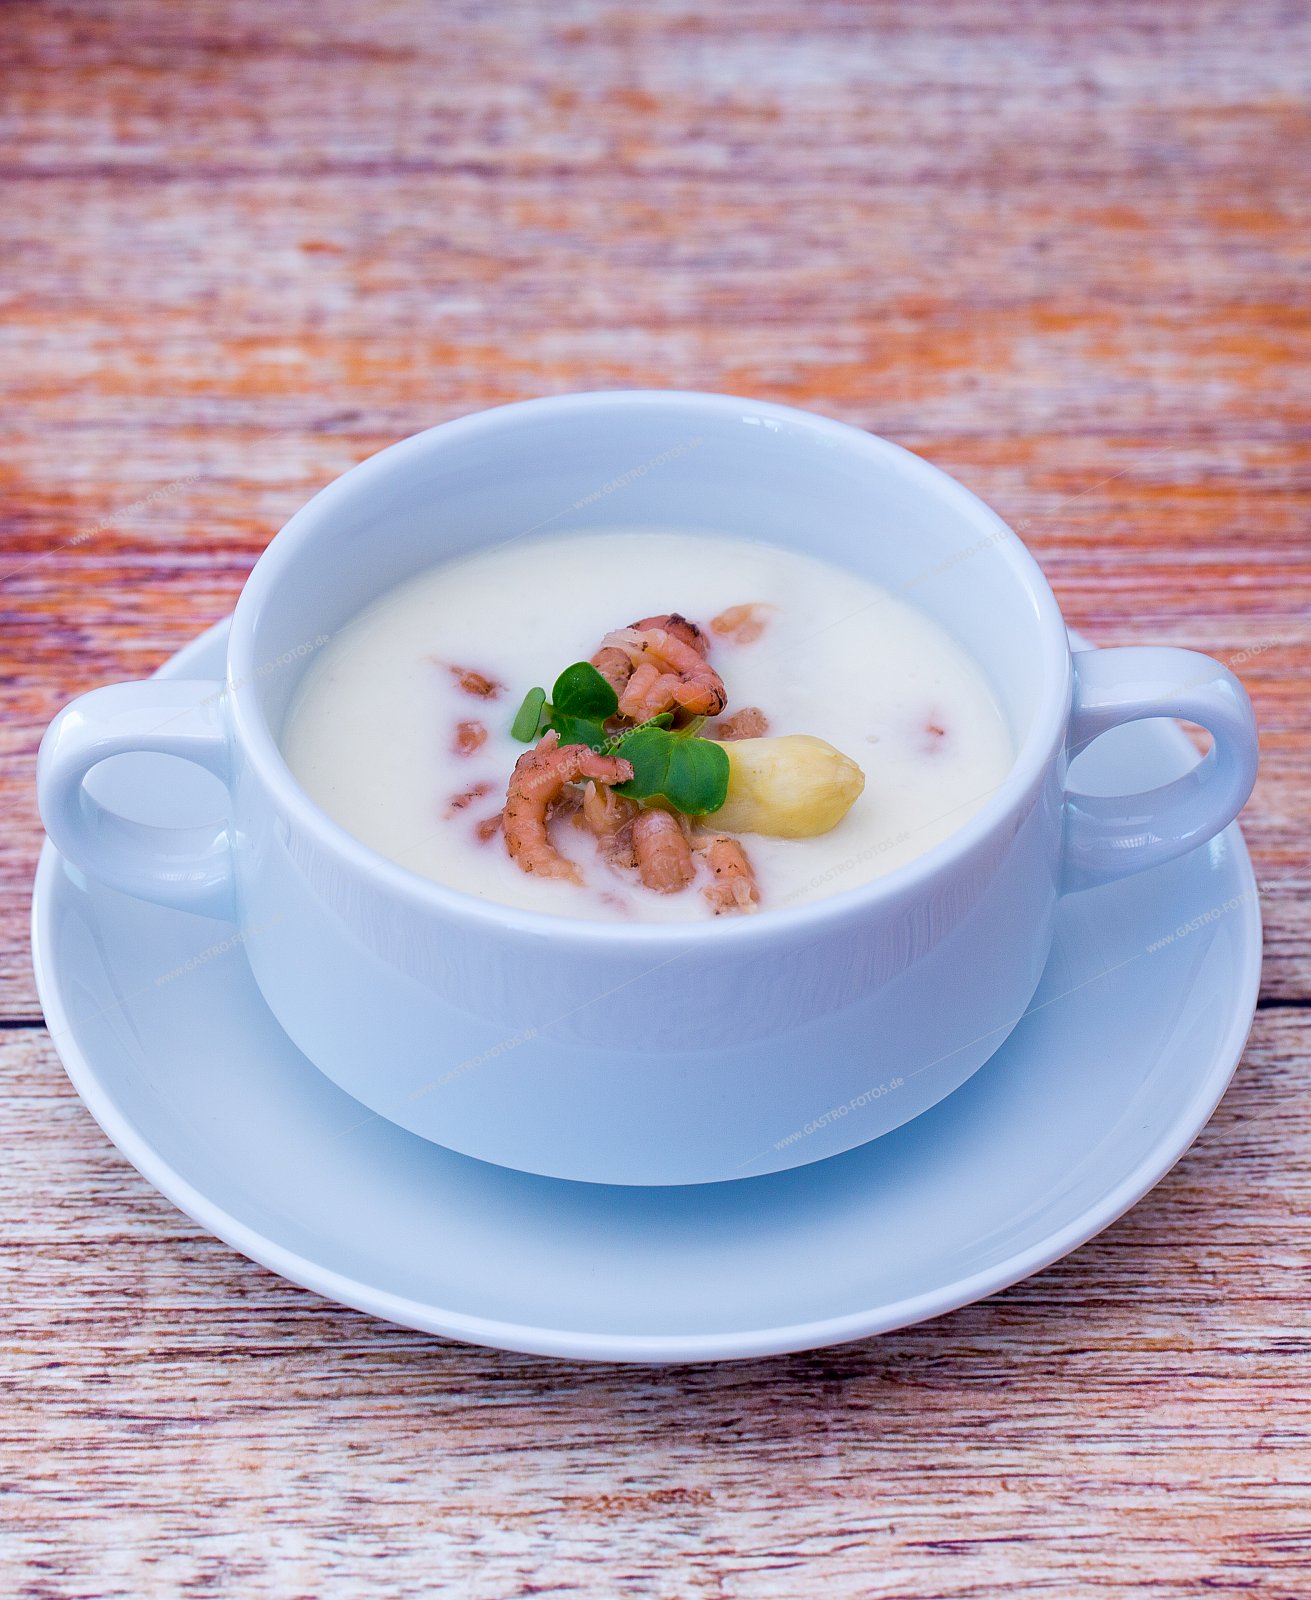 Spargelcremesuppe mit Nordeekrabben - Suppen & Eintöpfe mit Meeresfrüchten